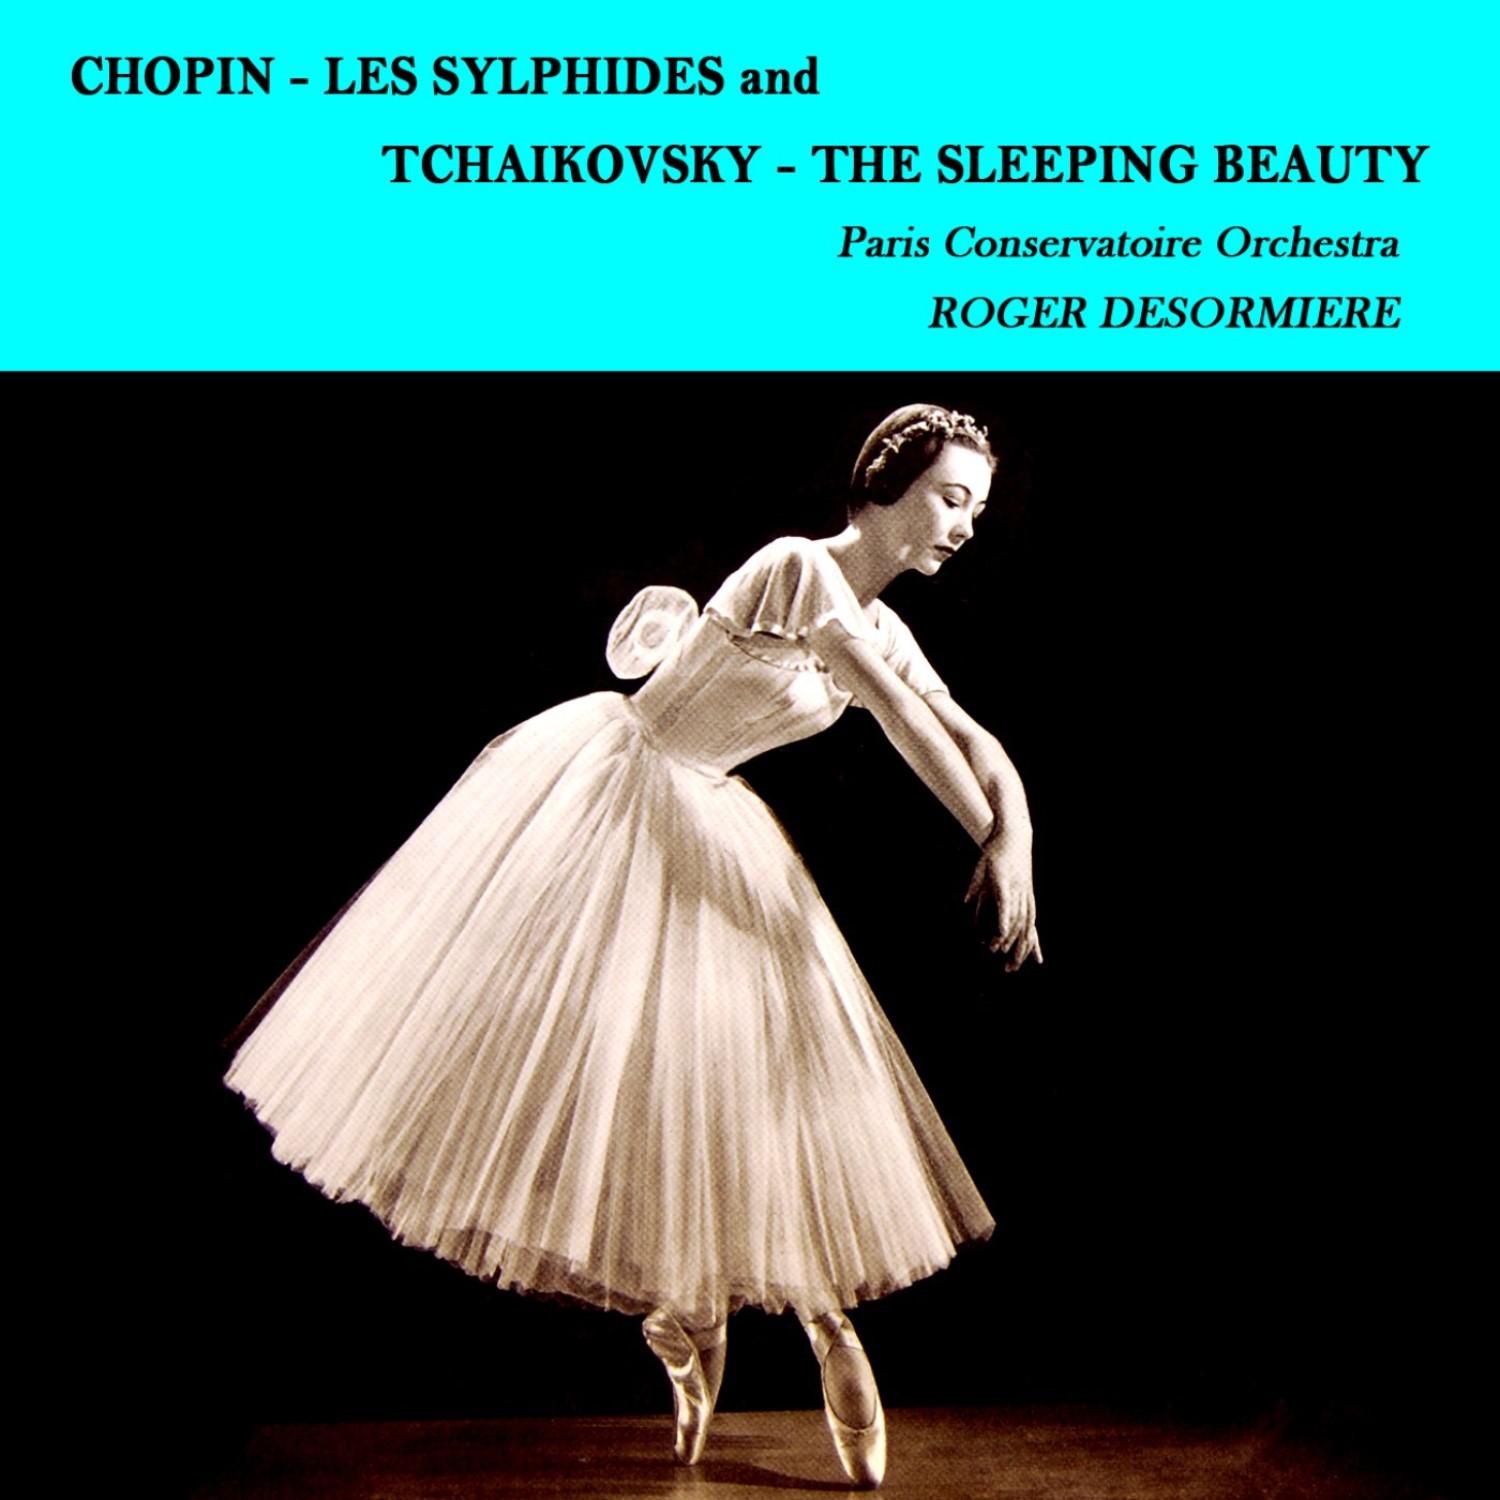 The Paris Conservatoire Orchestra - Les Syliphides: Mazurka in C Major, Op. 67, No. 3